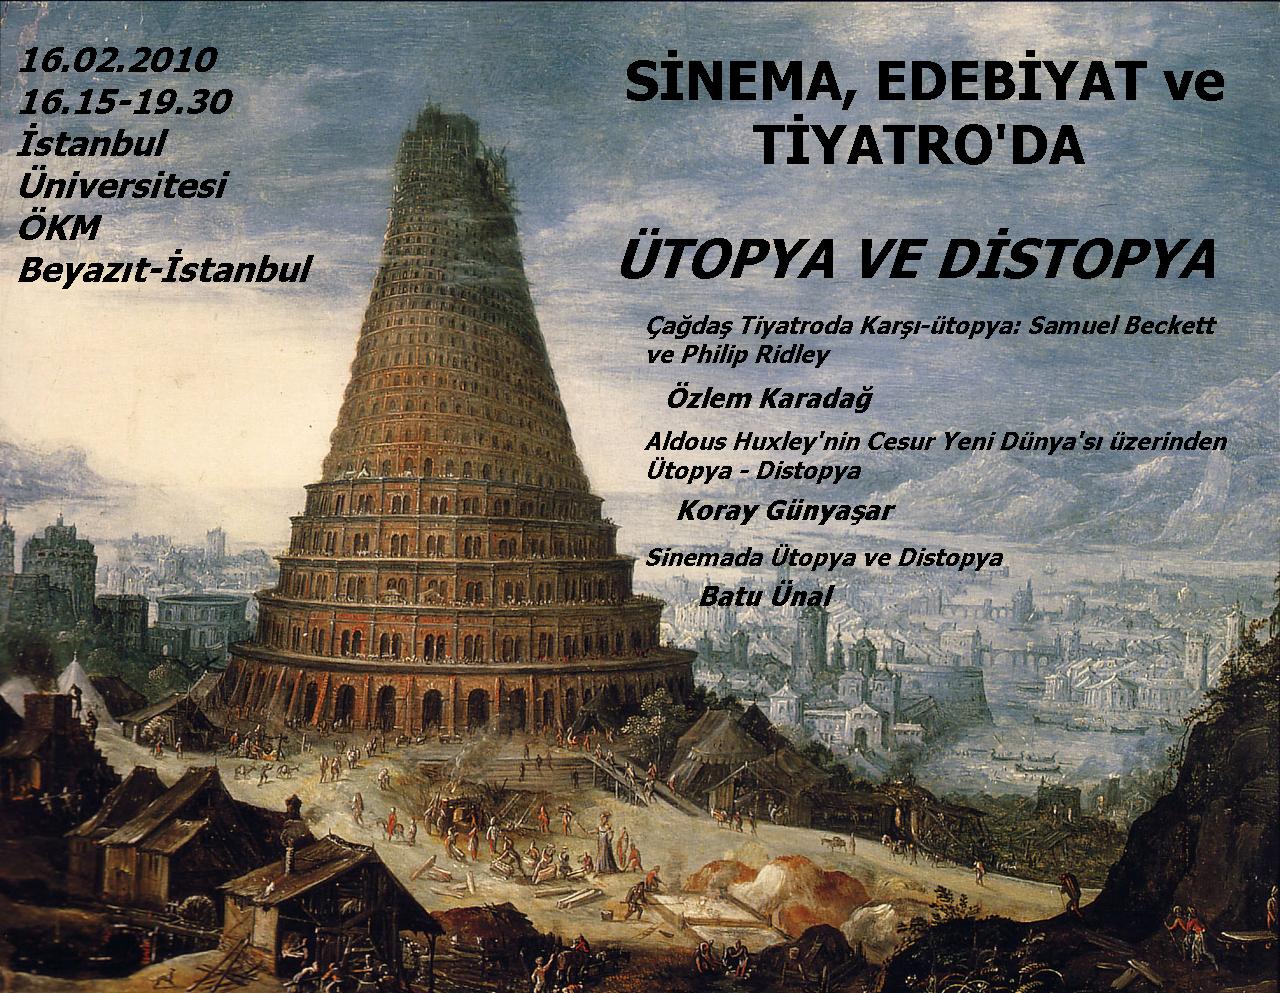 Edebiyat, Sinema ve Tiyatroda: Ütopya ve Distopya 19 – afiş